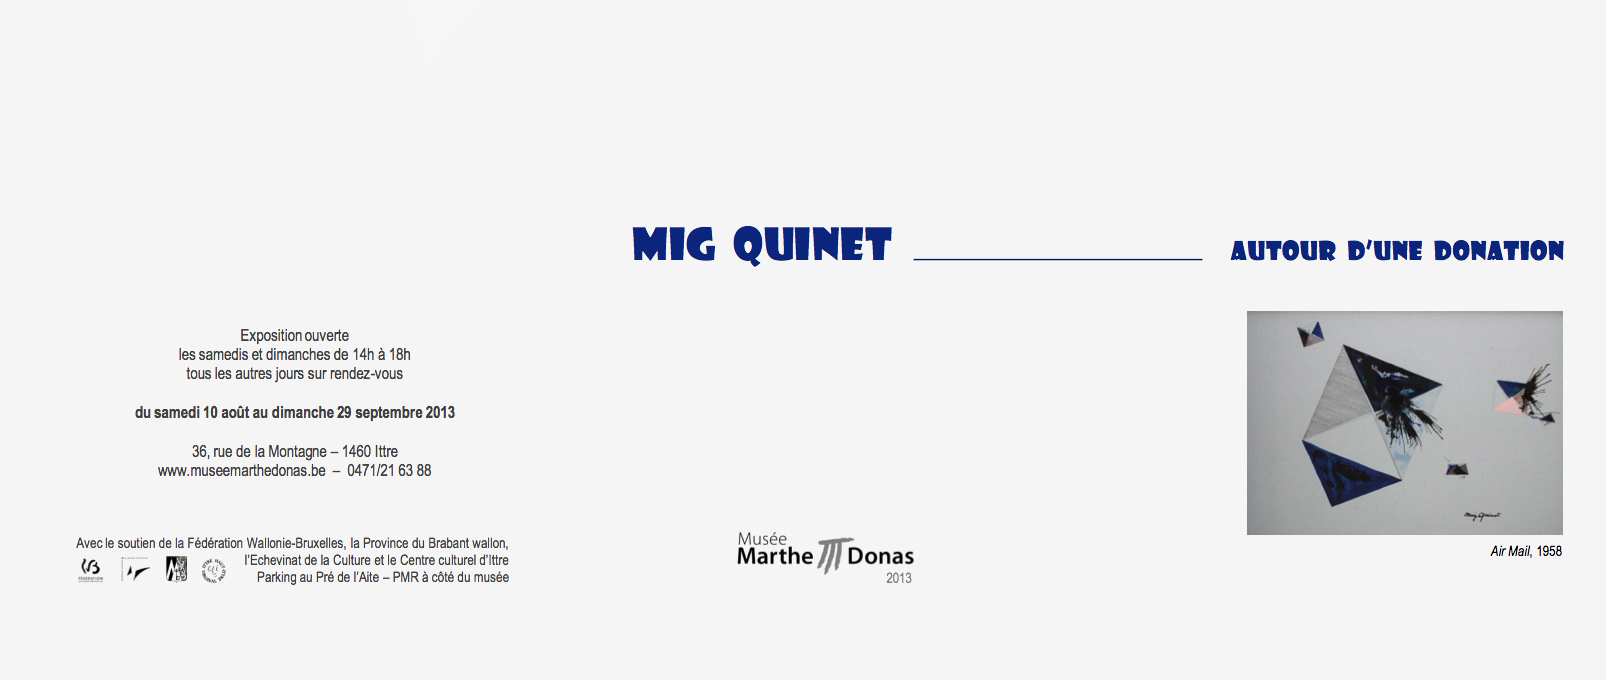 Mig Quinet autour d’une donation musée marthe donas 2013